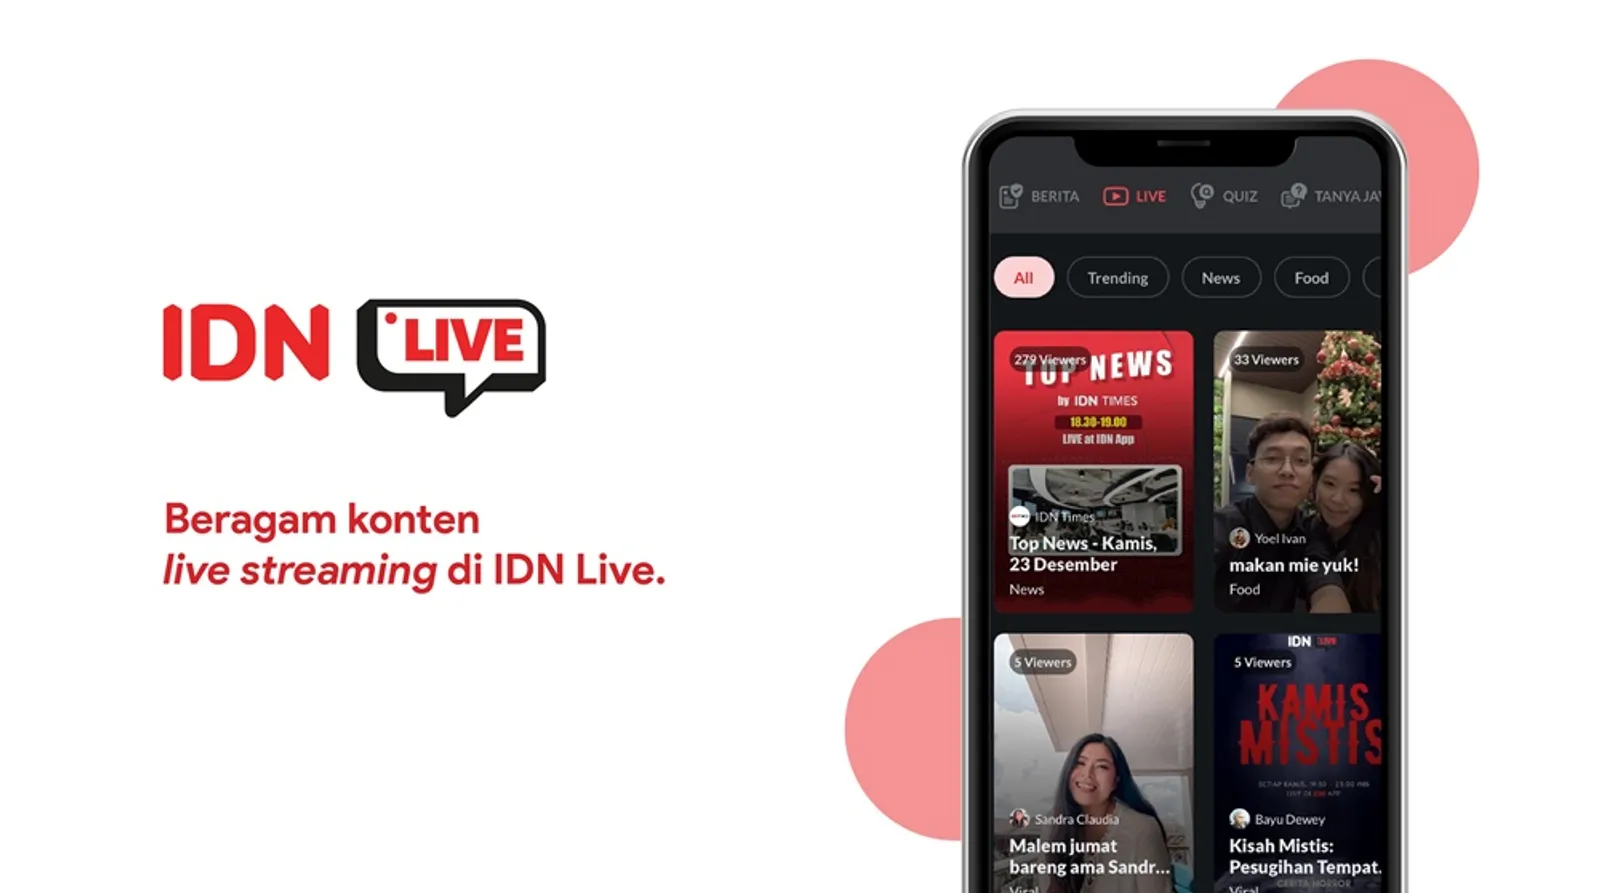 Lewat Fitur User-generated Content IDN Live, Semua Bisa Jadi Streamer